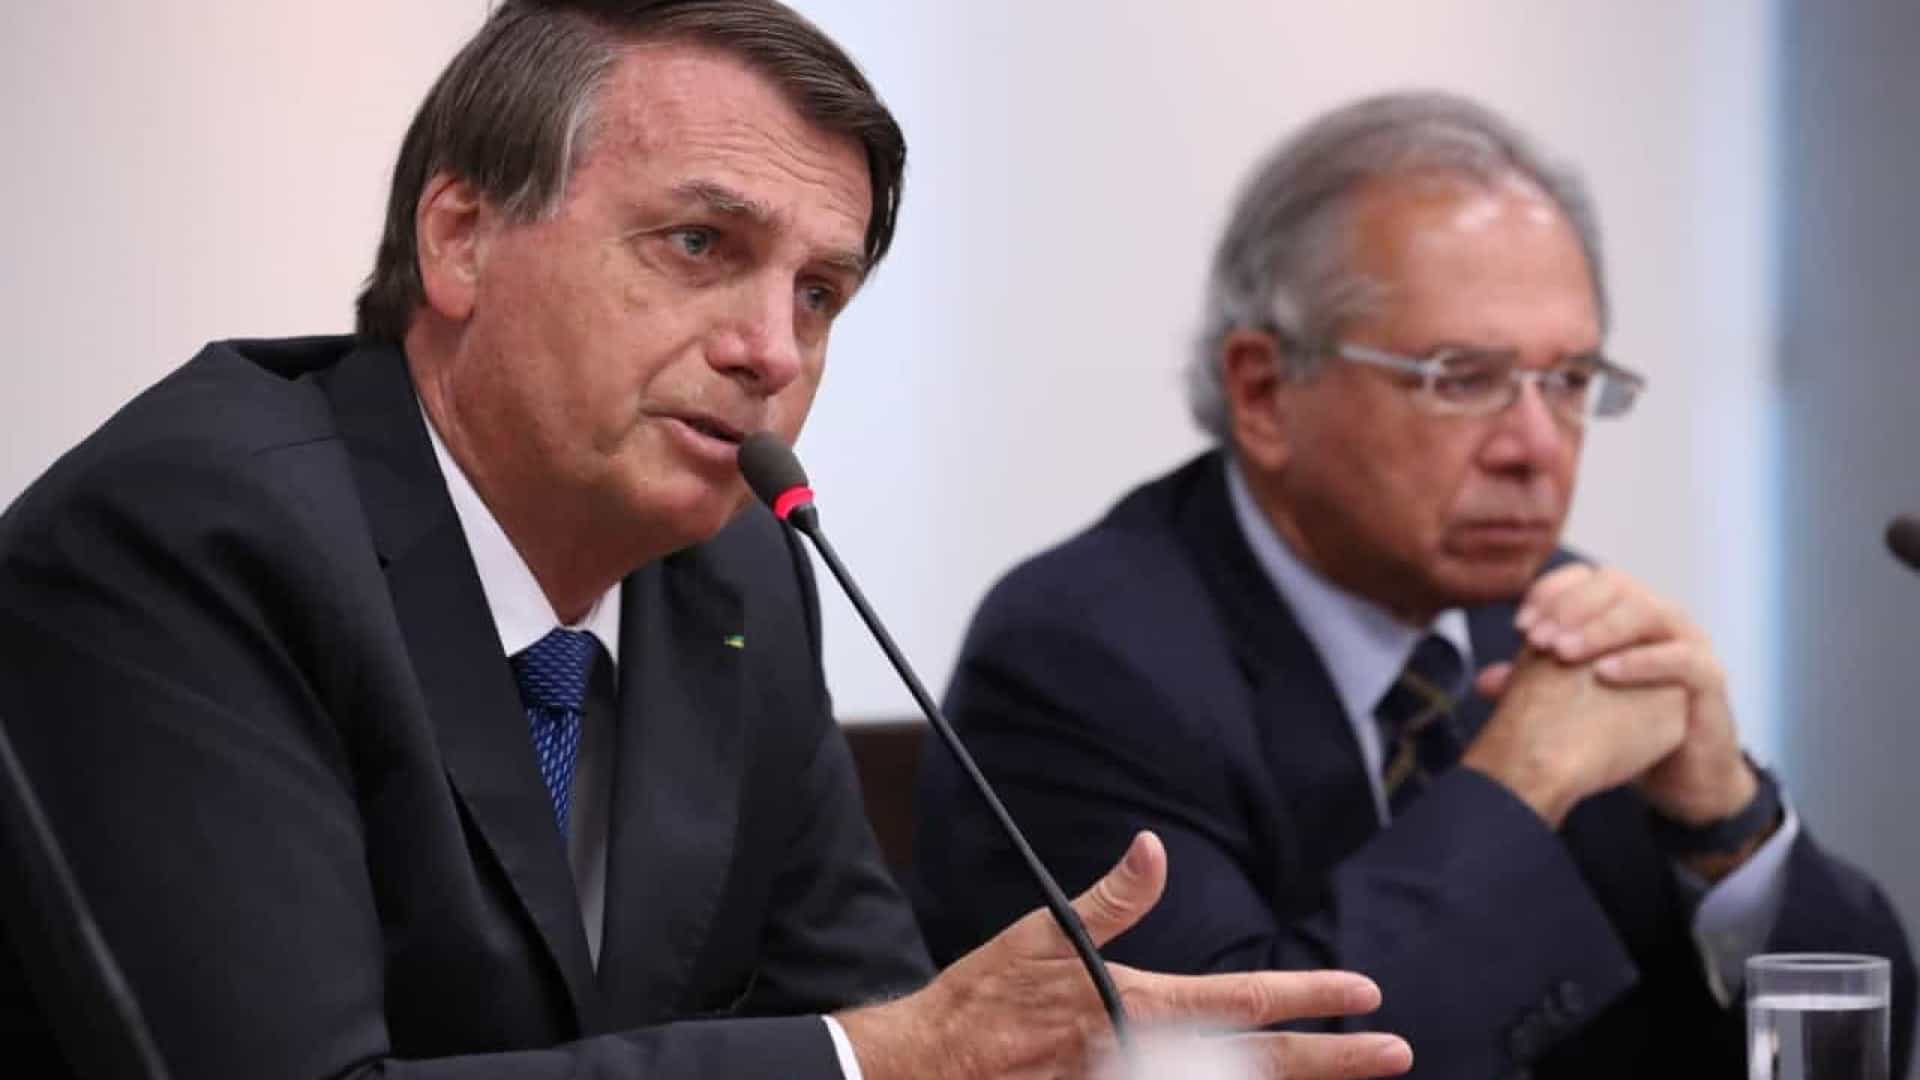 Jair Bolsonaro and Paulo Guedes